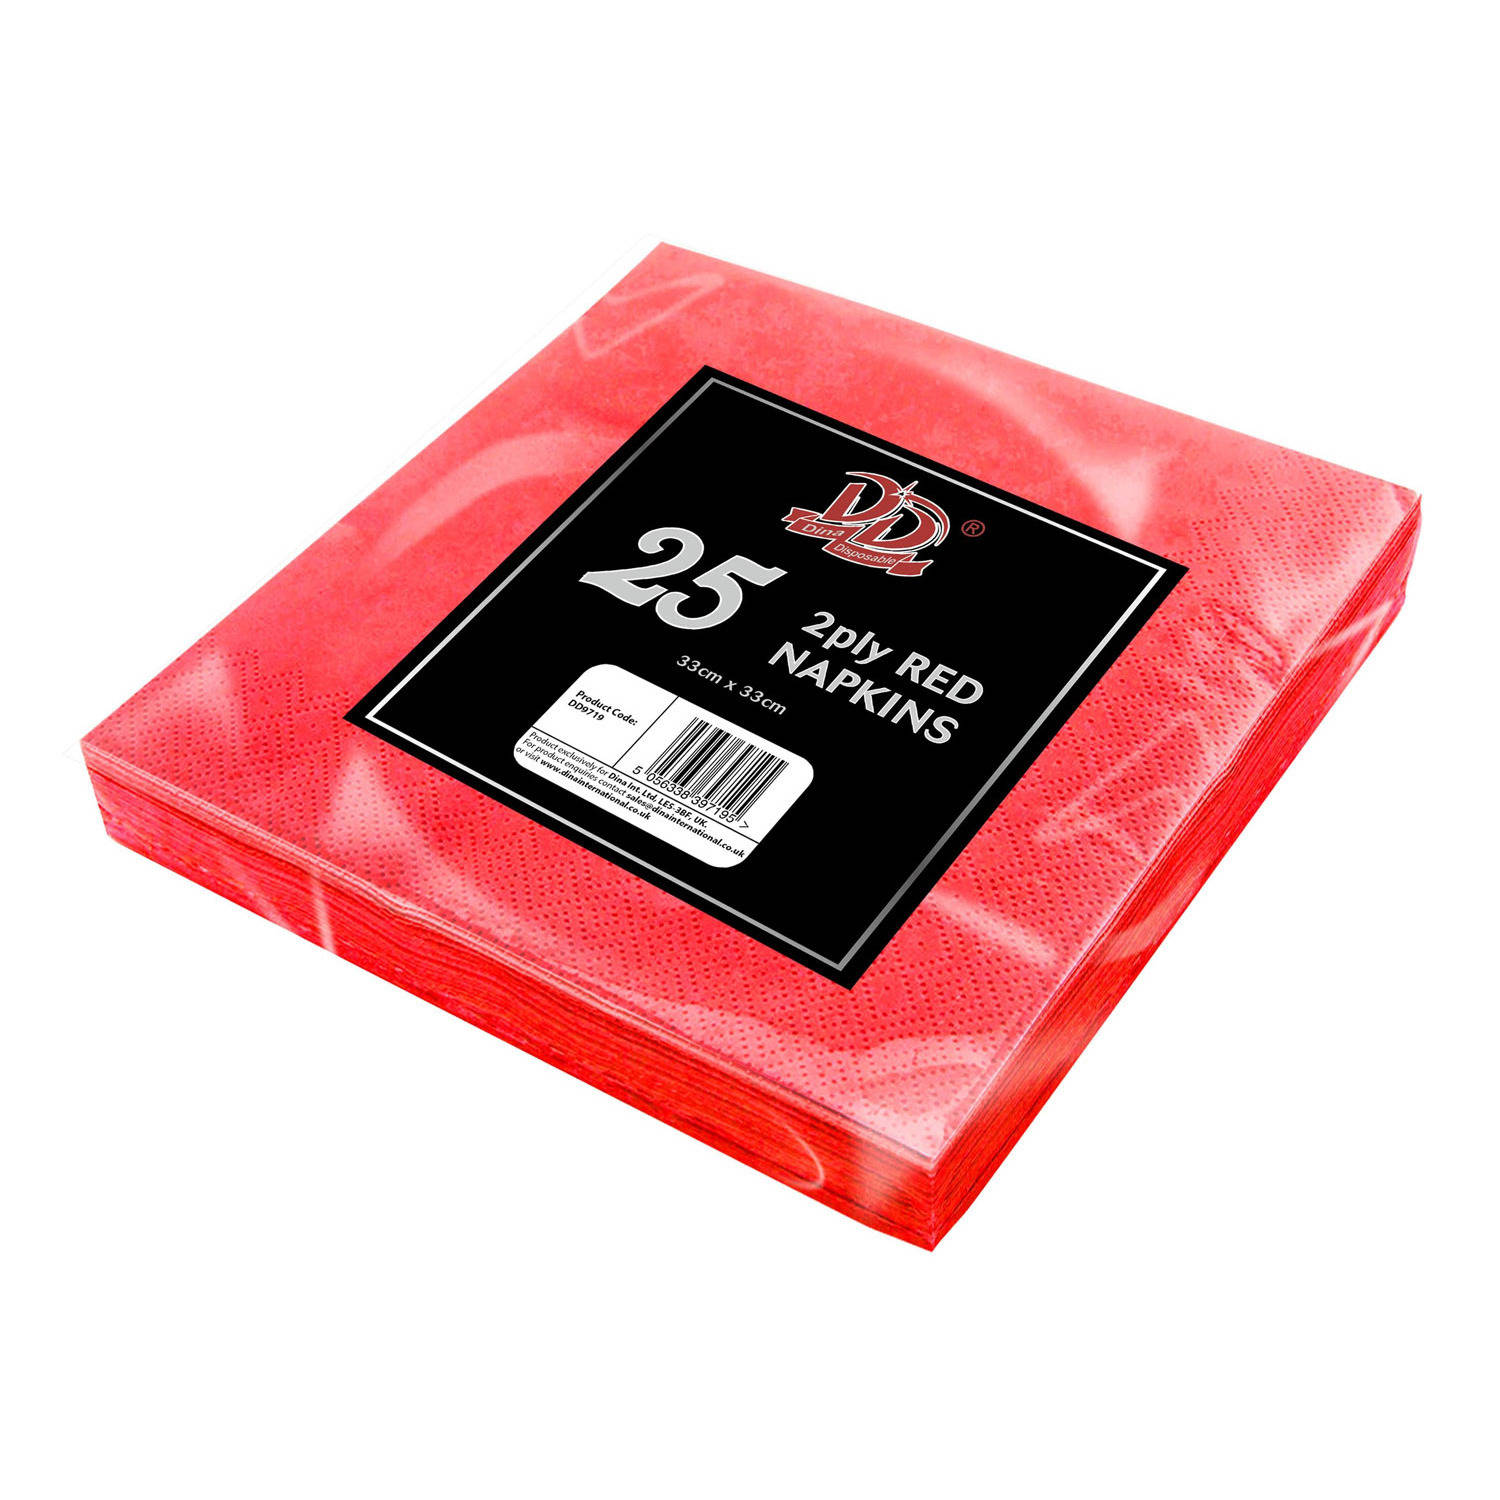 Omhoog Veronderstellen formule 25x Rode servetten 2-laags van papier 33 x 33 cm - Feestservetten | Blokker